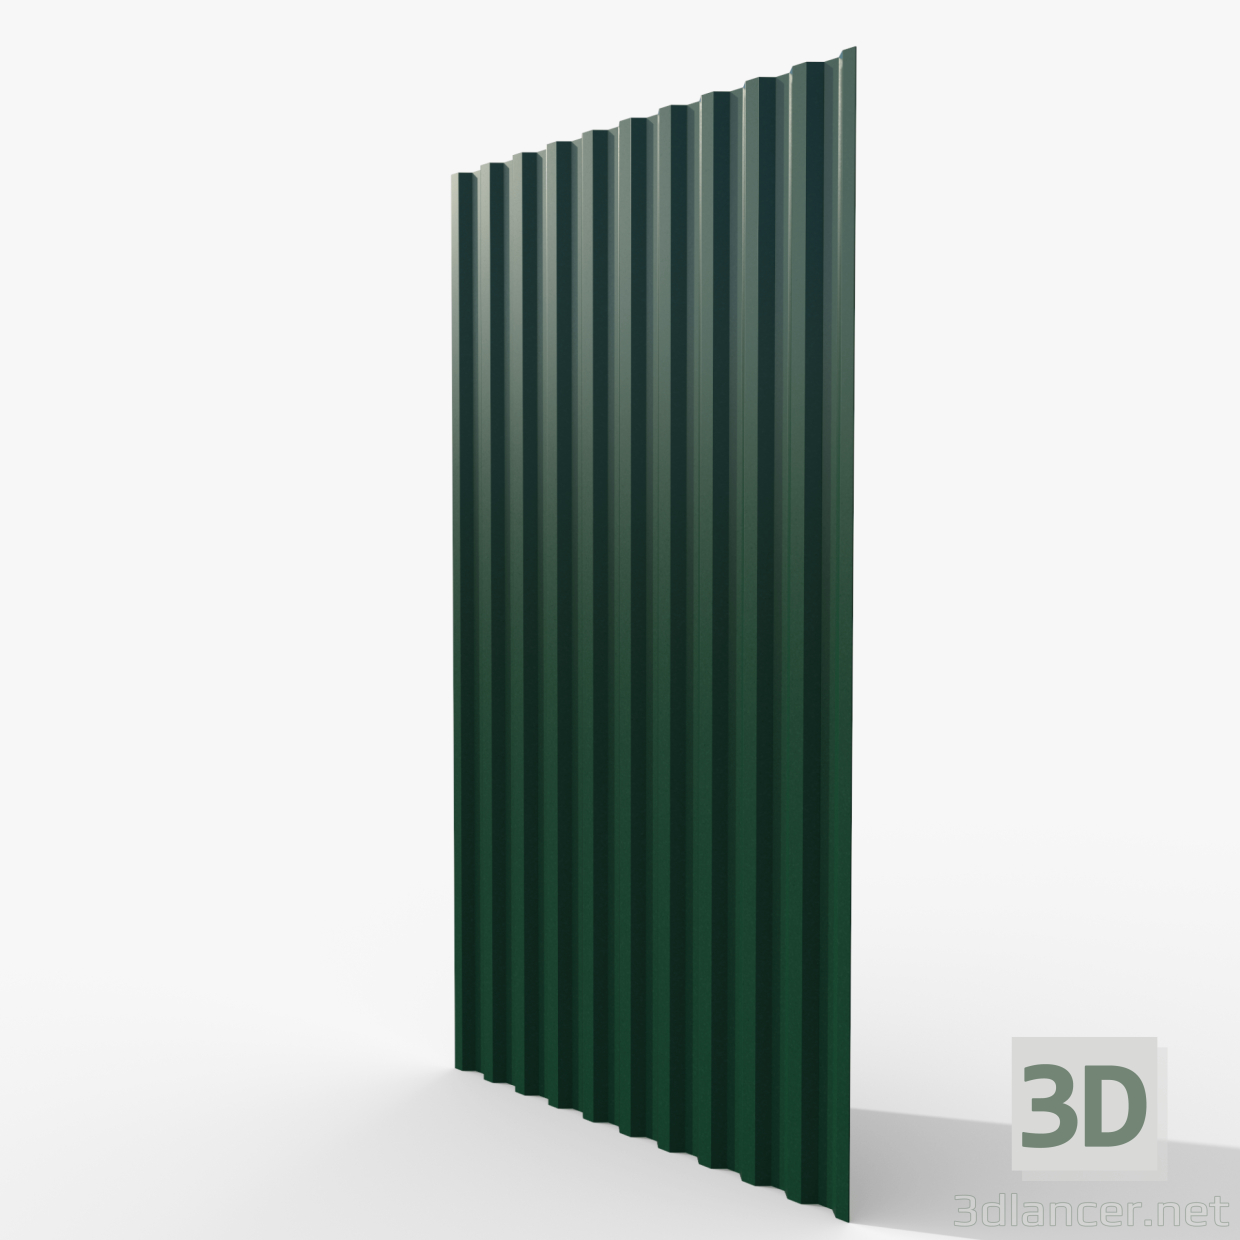 Profilblech grün 3D-Modell kaufen - Rendern